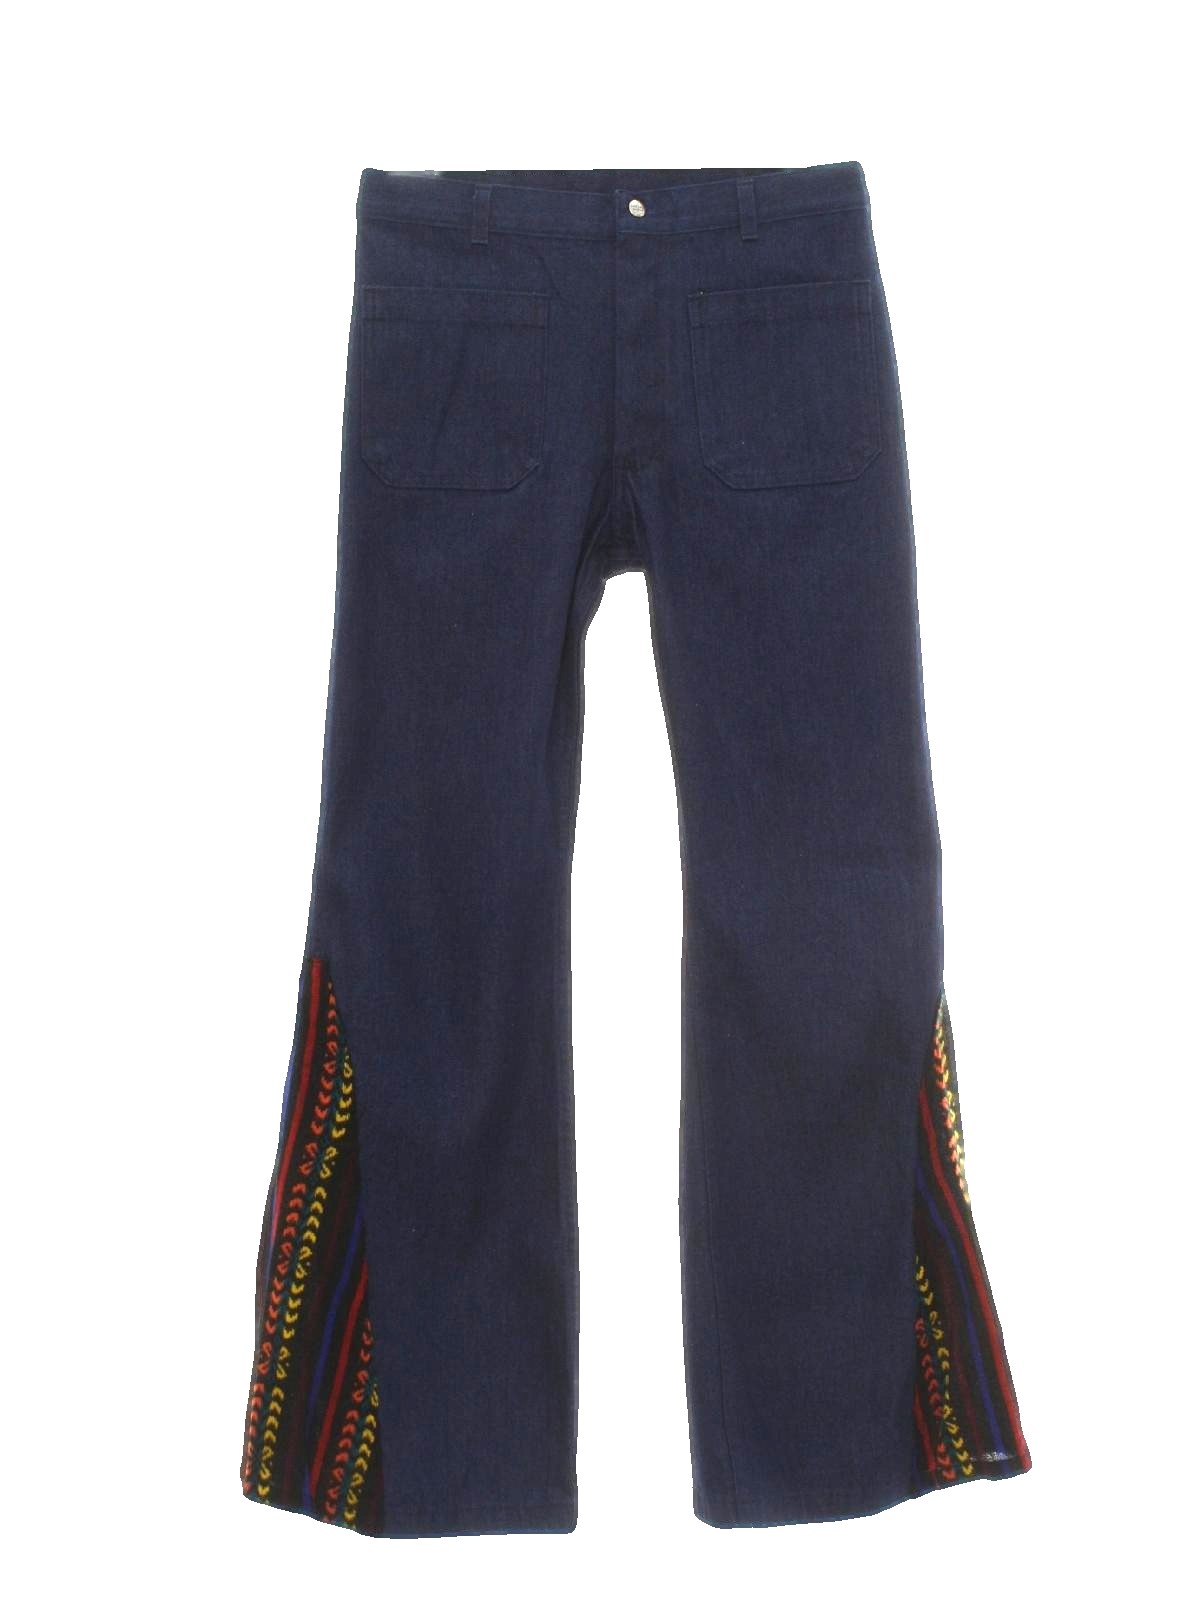 70's Vintage Bellbottom Pants: 70s style -Seafarer- Mens dark blue ...